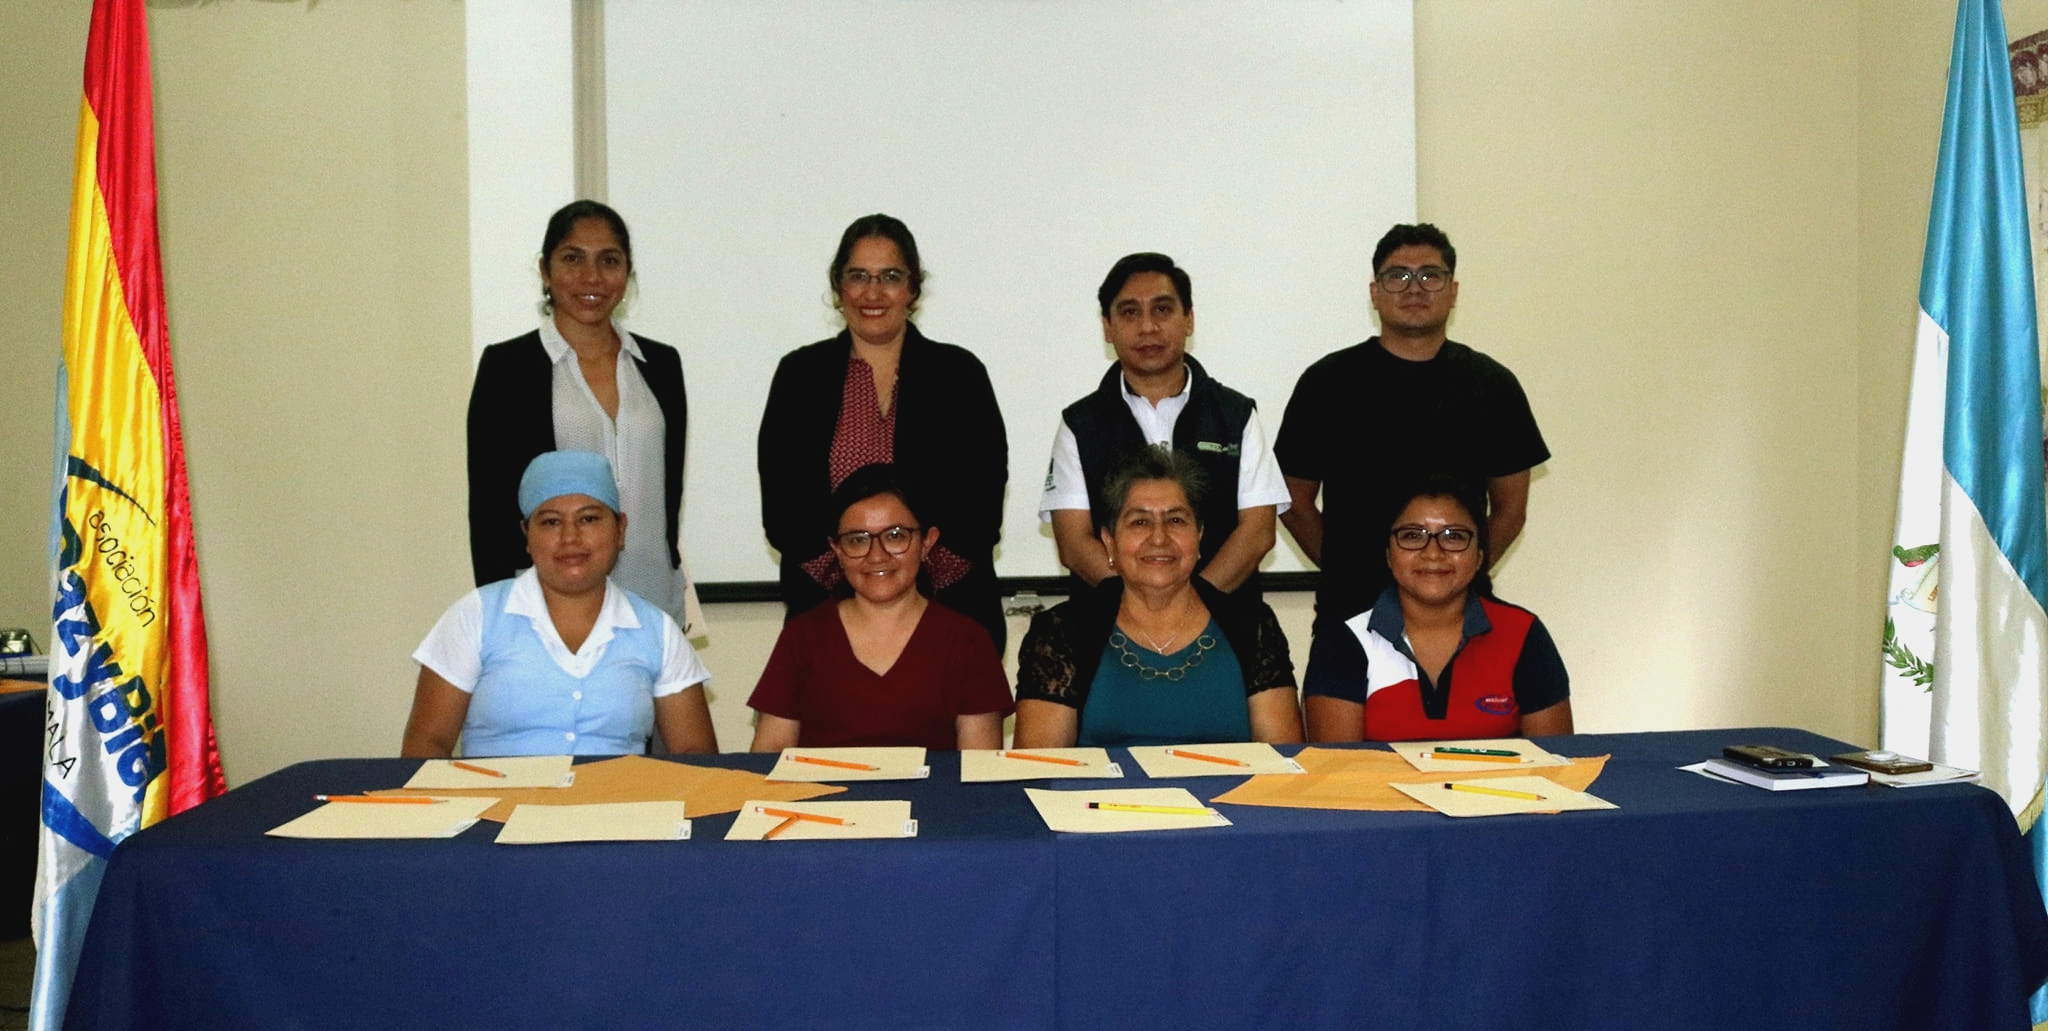 Board of Directors of Paz y Bien Guatemala